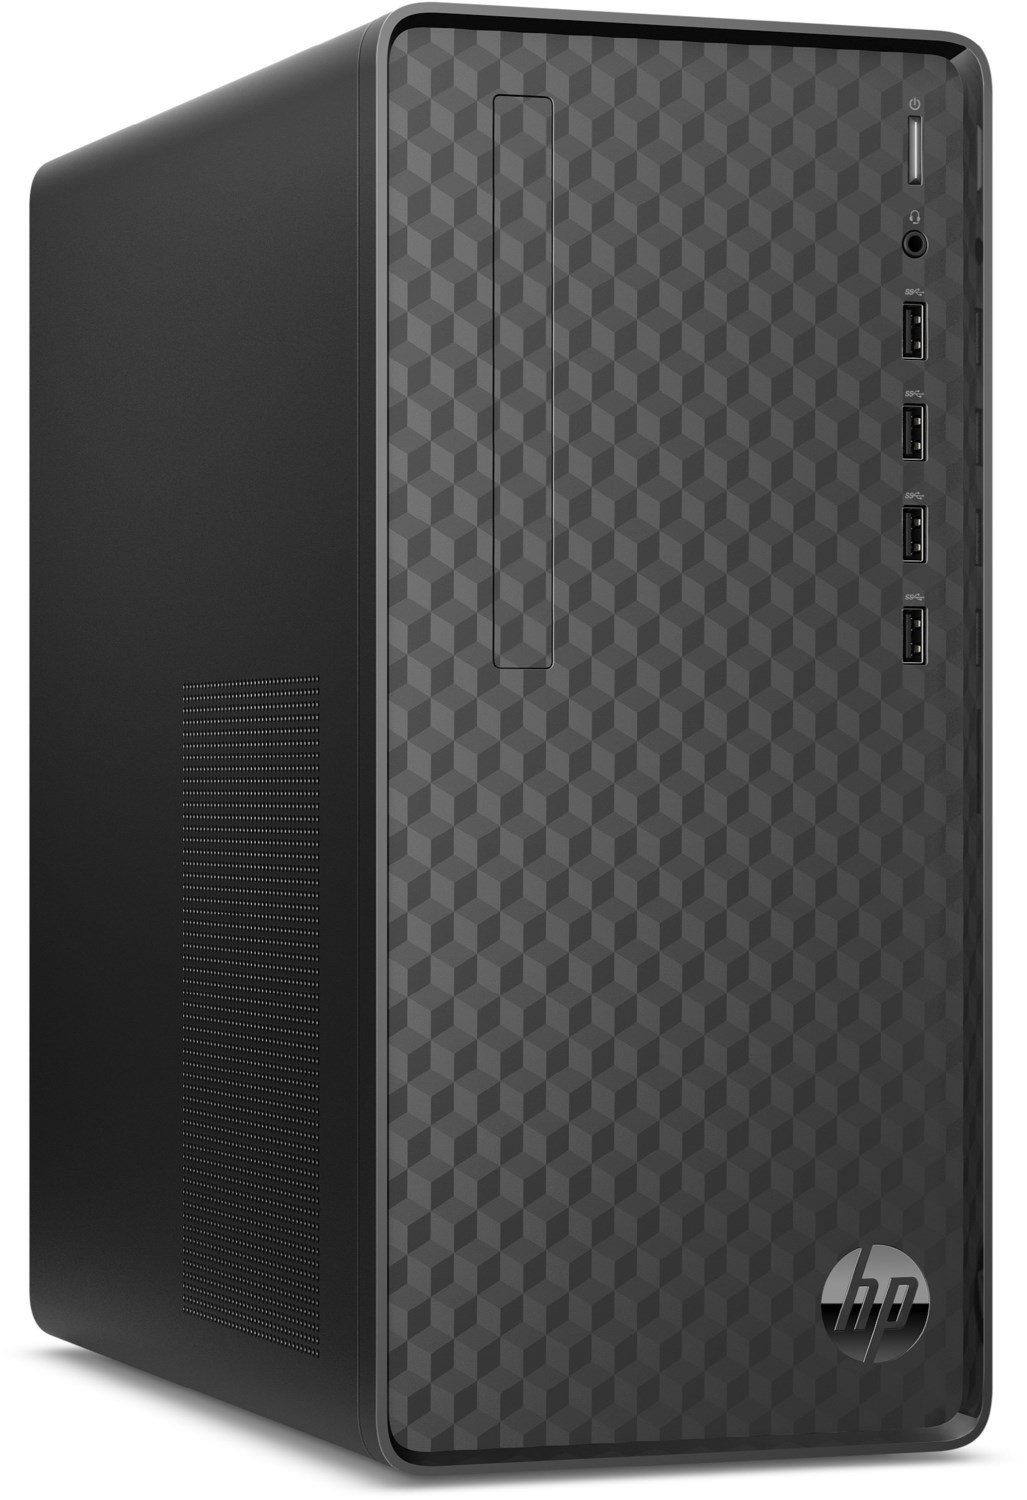 M01-F2505ng (85N77EA) Desktop PC dark black